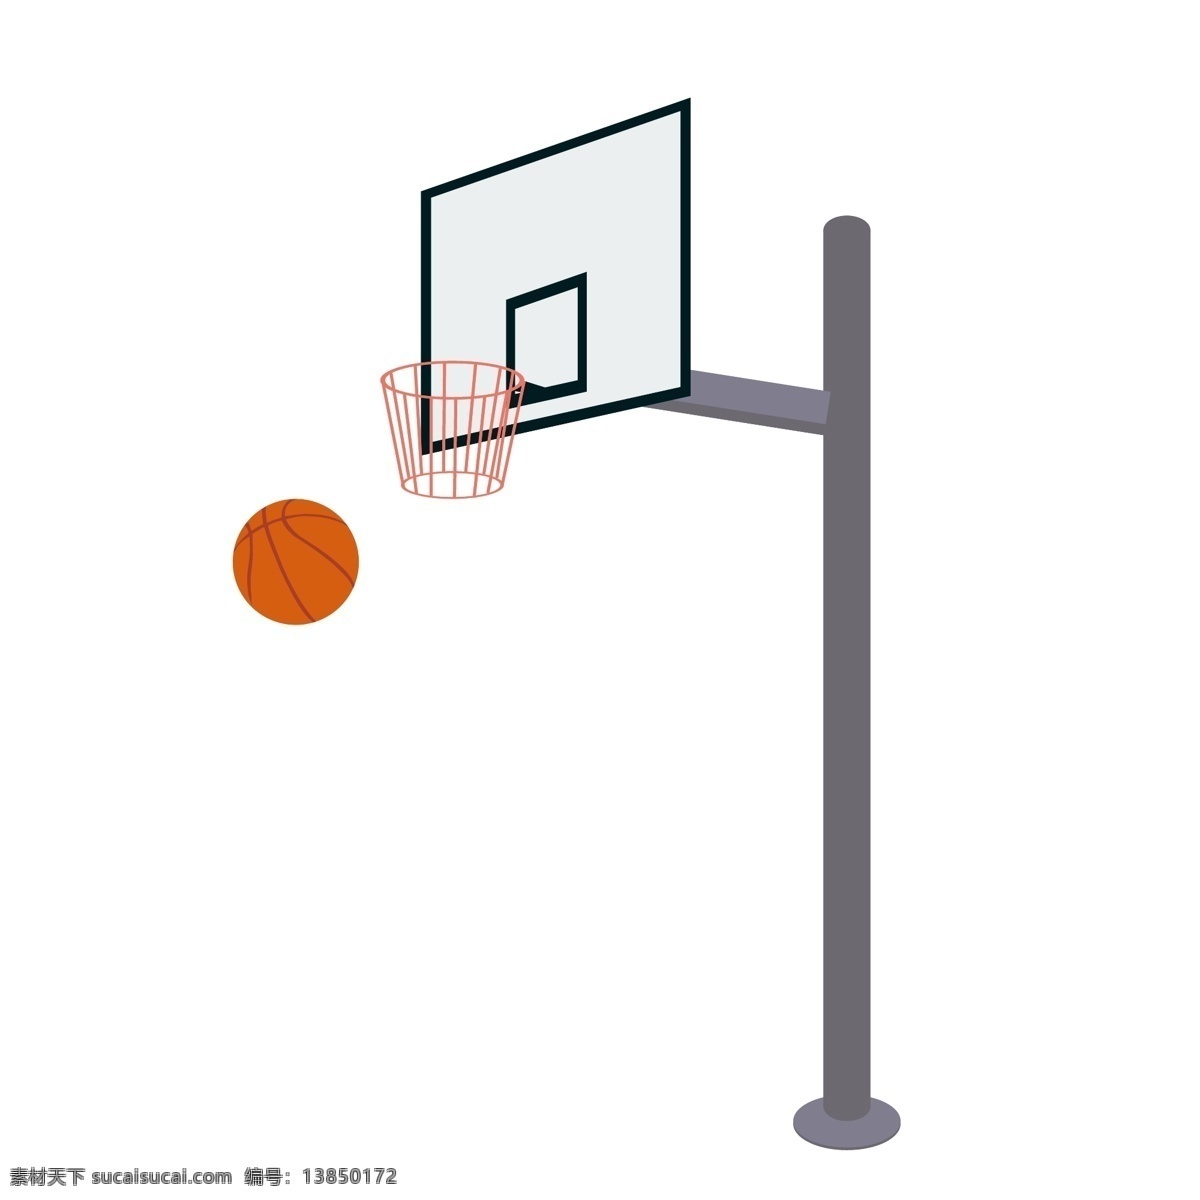 矢量 体育 日 运动器材 篮球 篮球架 元素 设计元素 可商用 装饰 体育日